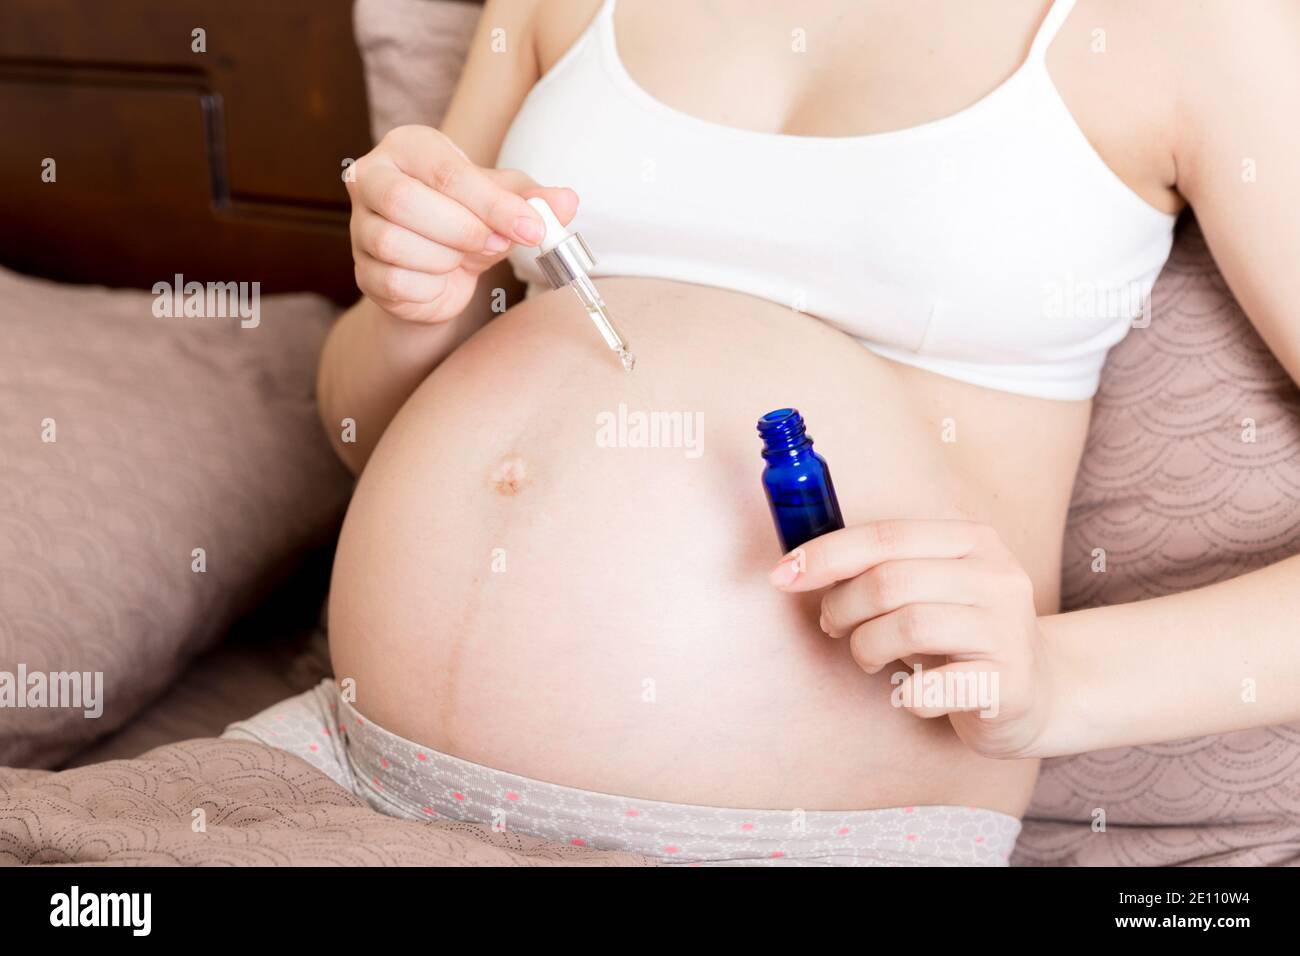 una ragazza incinta si siede a casa sul letto e gli strisci sorridono una crema di marcatura anti-stretch sul suo stomaco. Gravidanza, maternità, preparazione e attesa Foto Stock